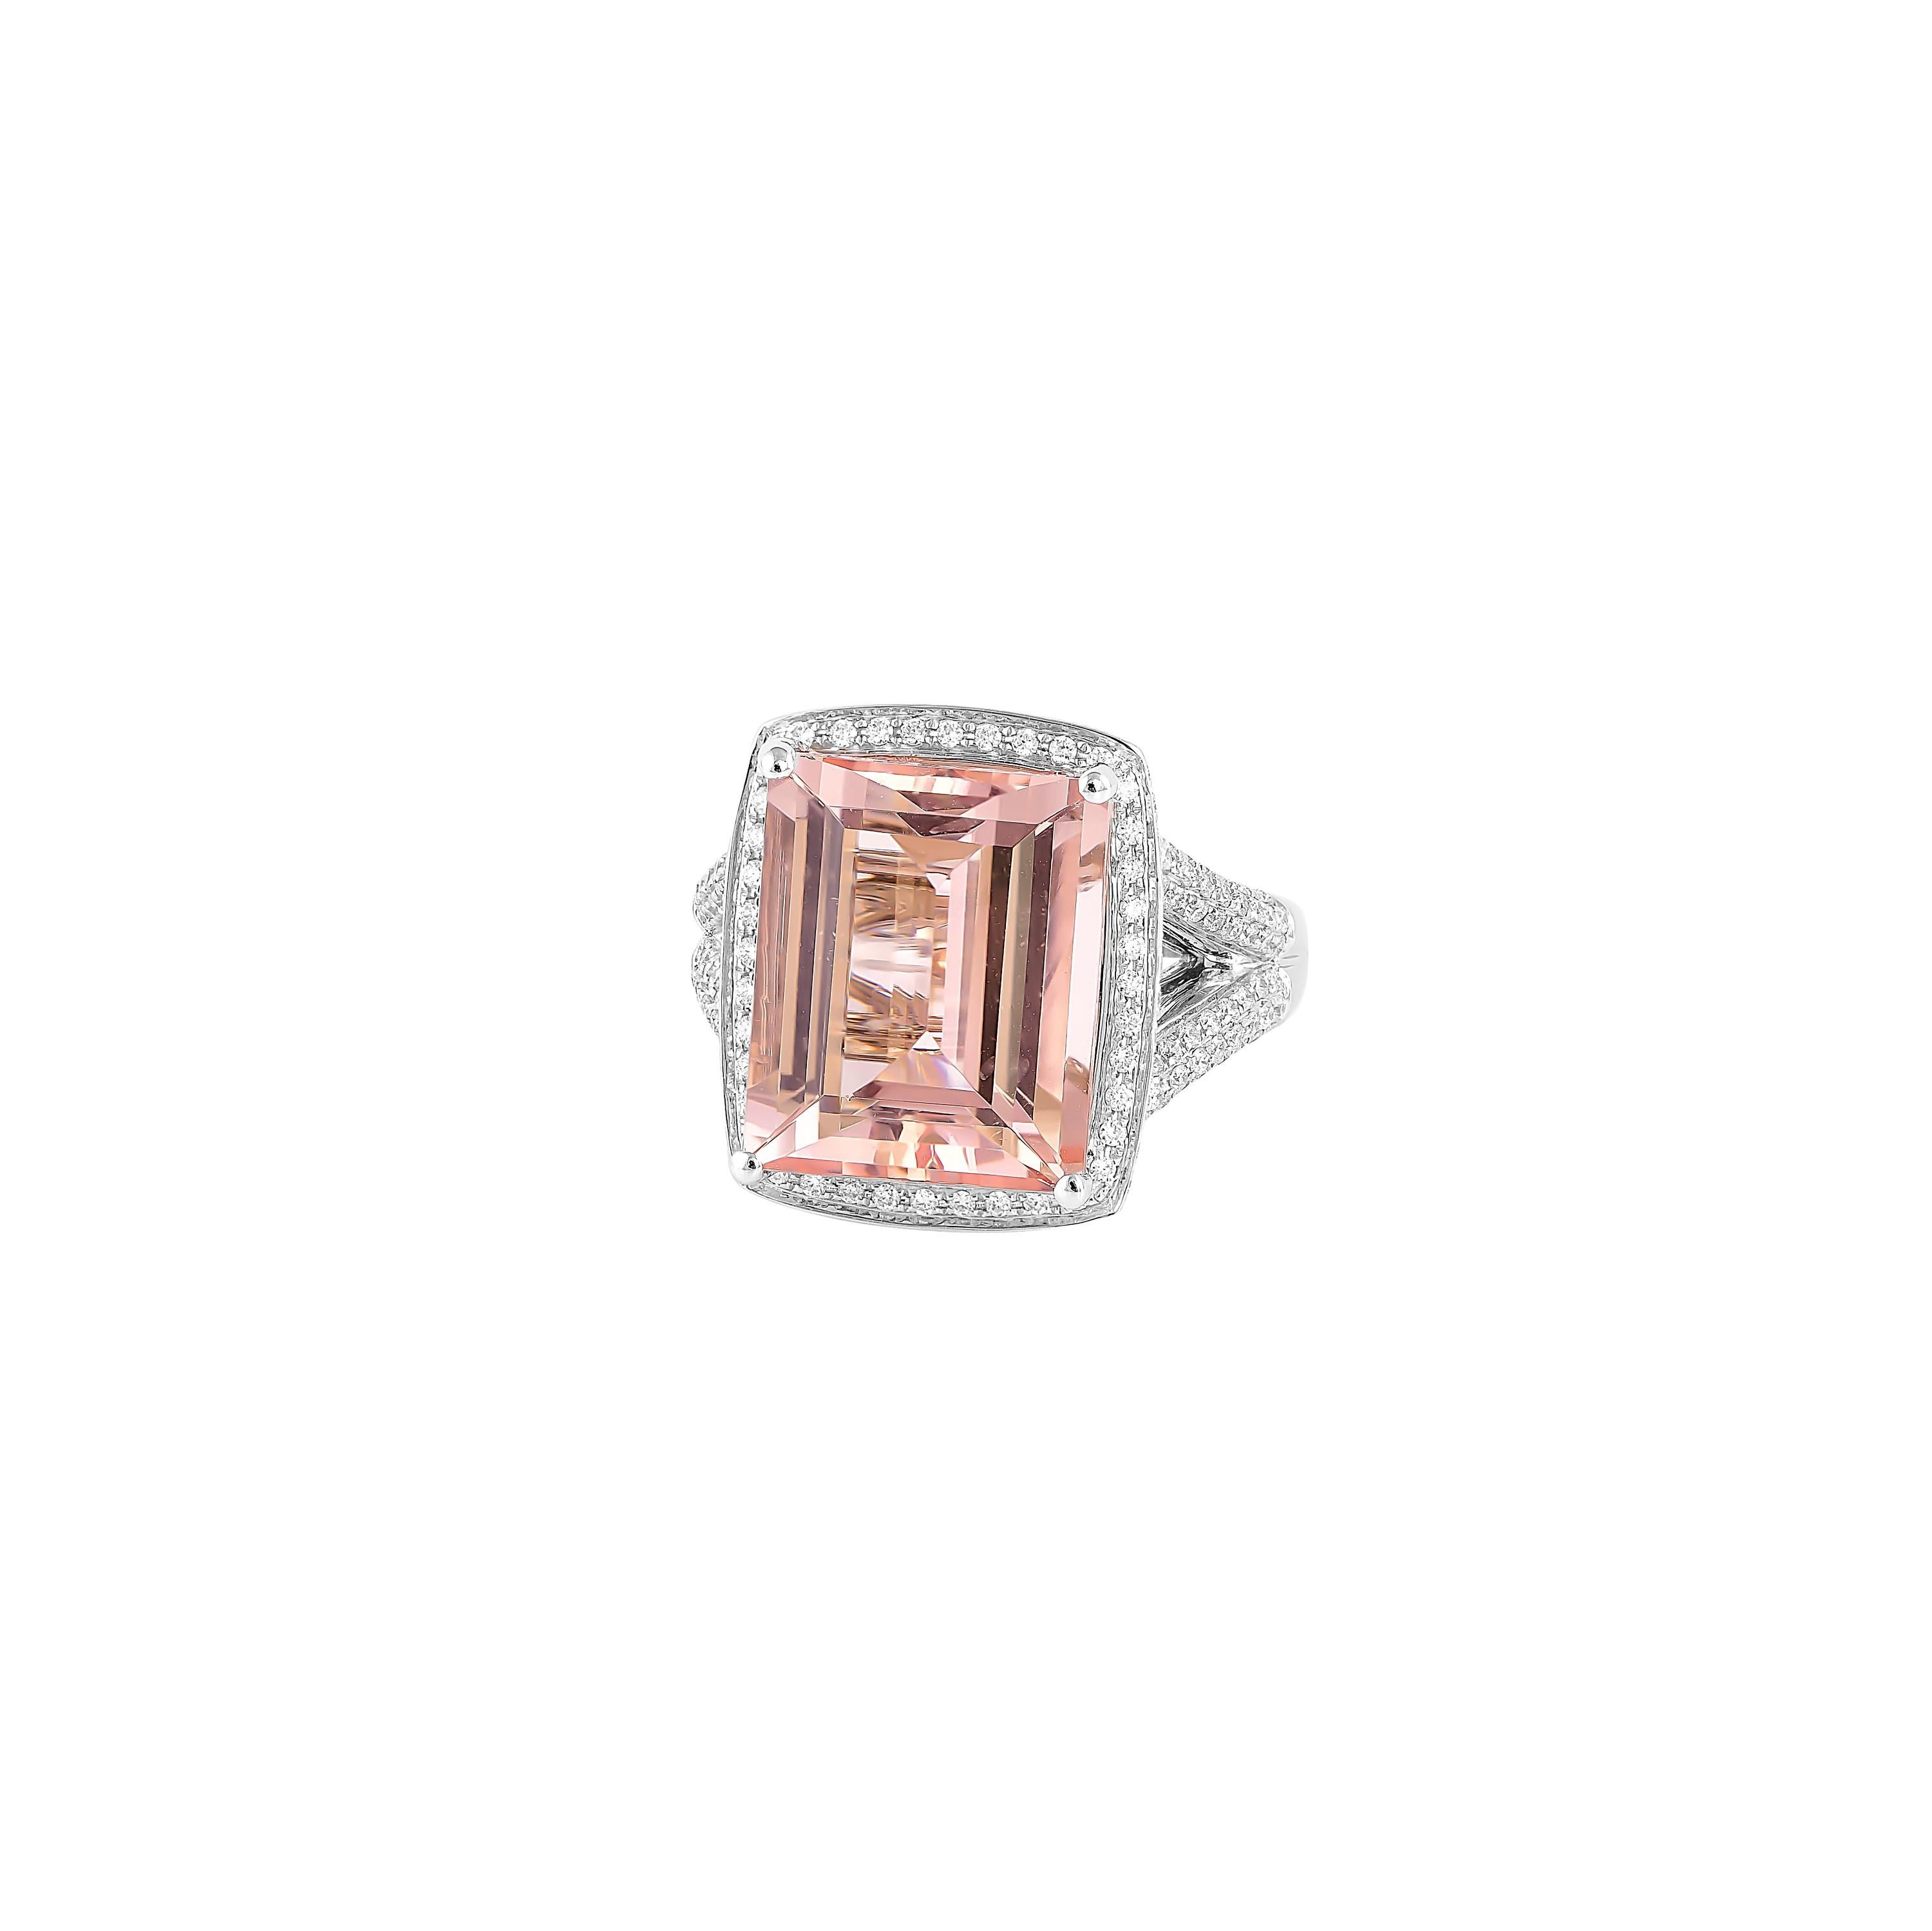 Baguette Cut 10.6 Carat Pink Morganite and Diamond Ring in 18 Karat White Gold